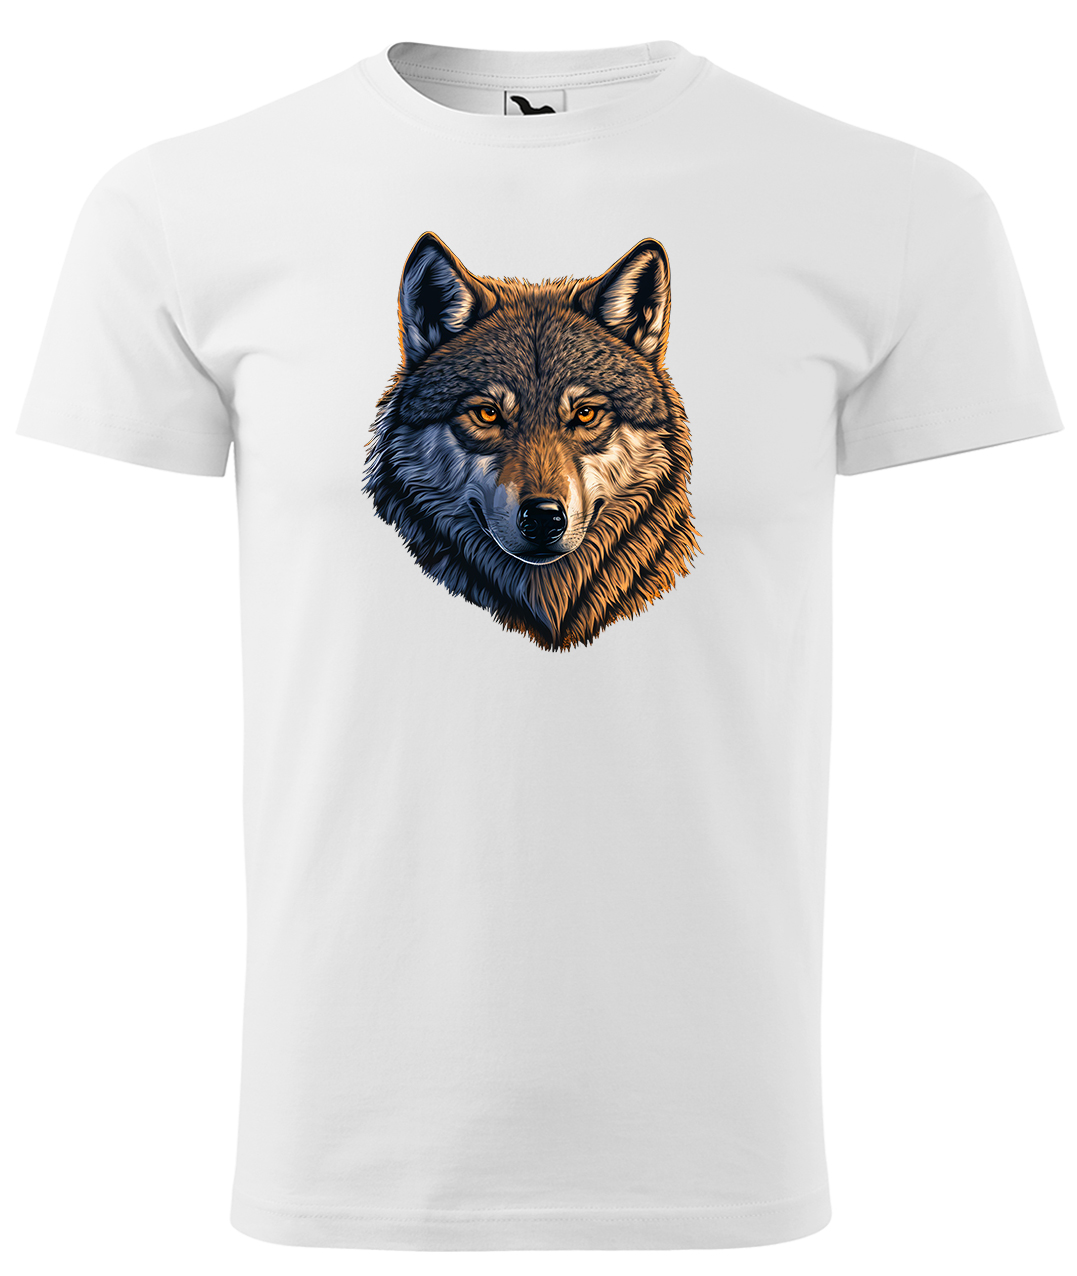 Dětské tričko s vlkem - Hlava vlka Velikost: 8 let / 134 cm, Barva: Bílá (00), Délka rukávu: Krátký rukáv